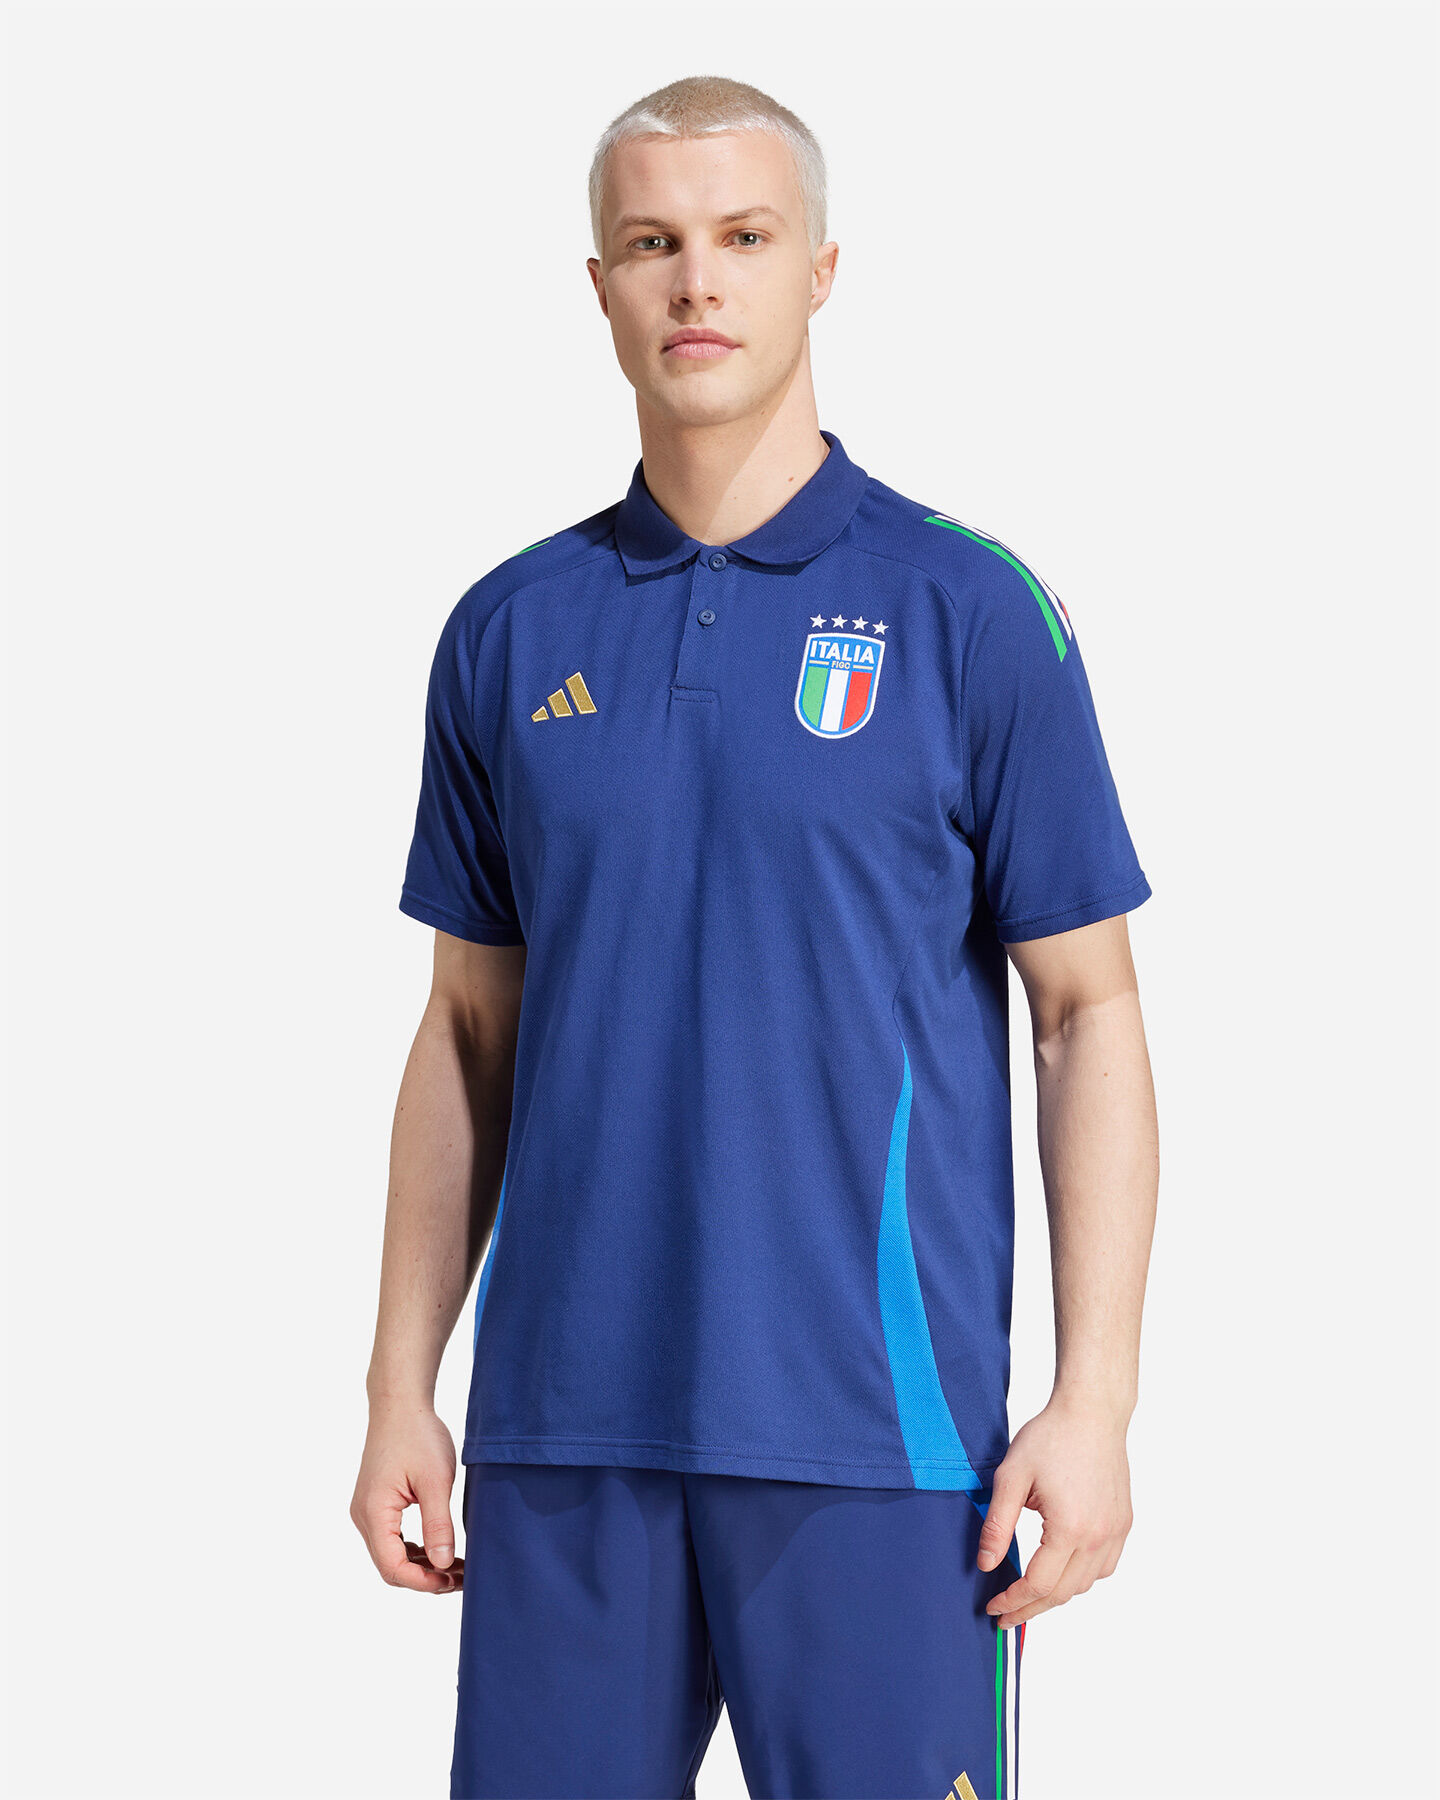  Abbigliamento calcio ufficiale ADIDAS ITALIA FIGC M S5655106|UNI|S scatto 1